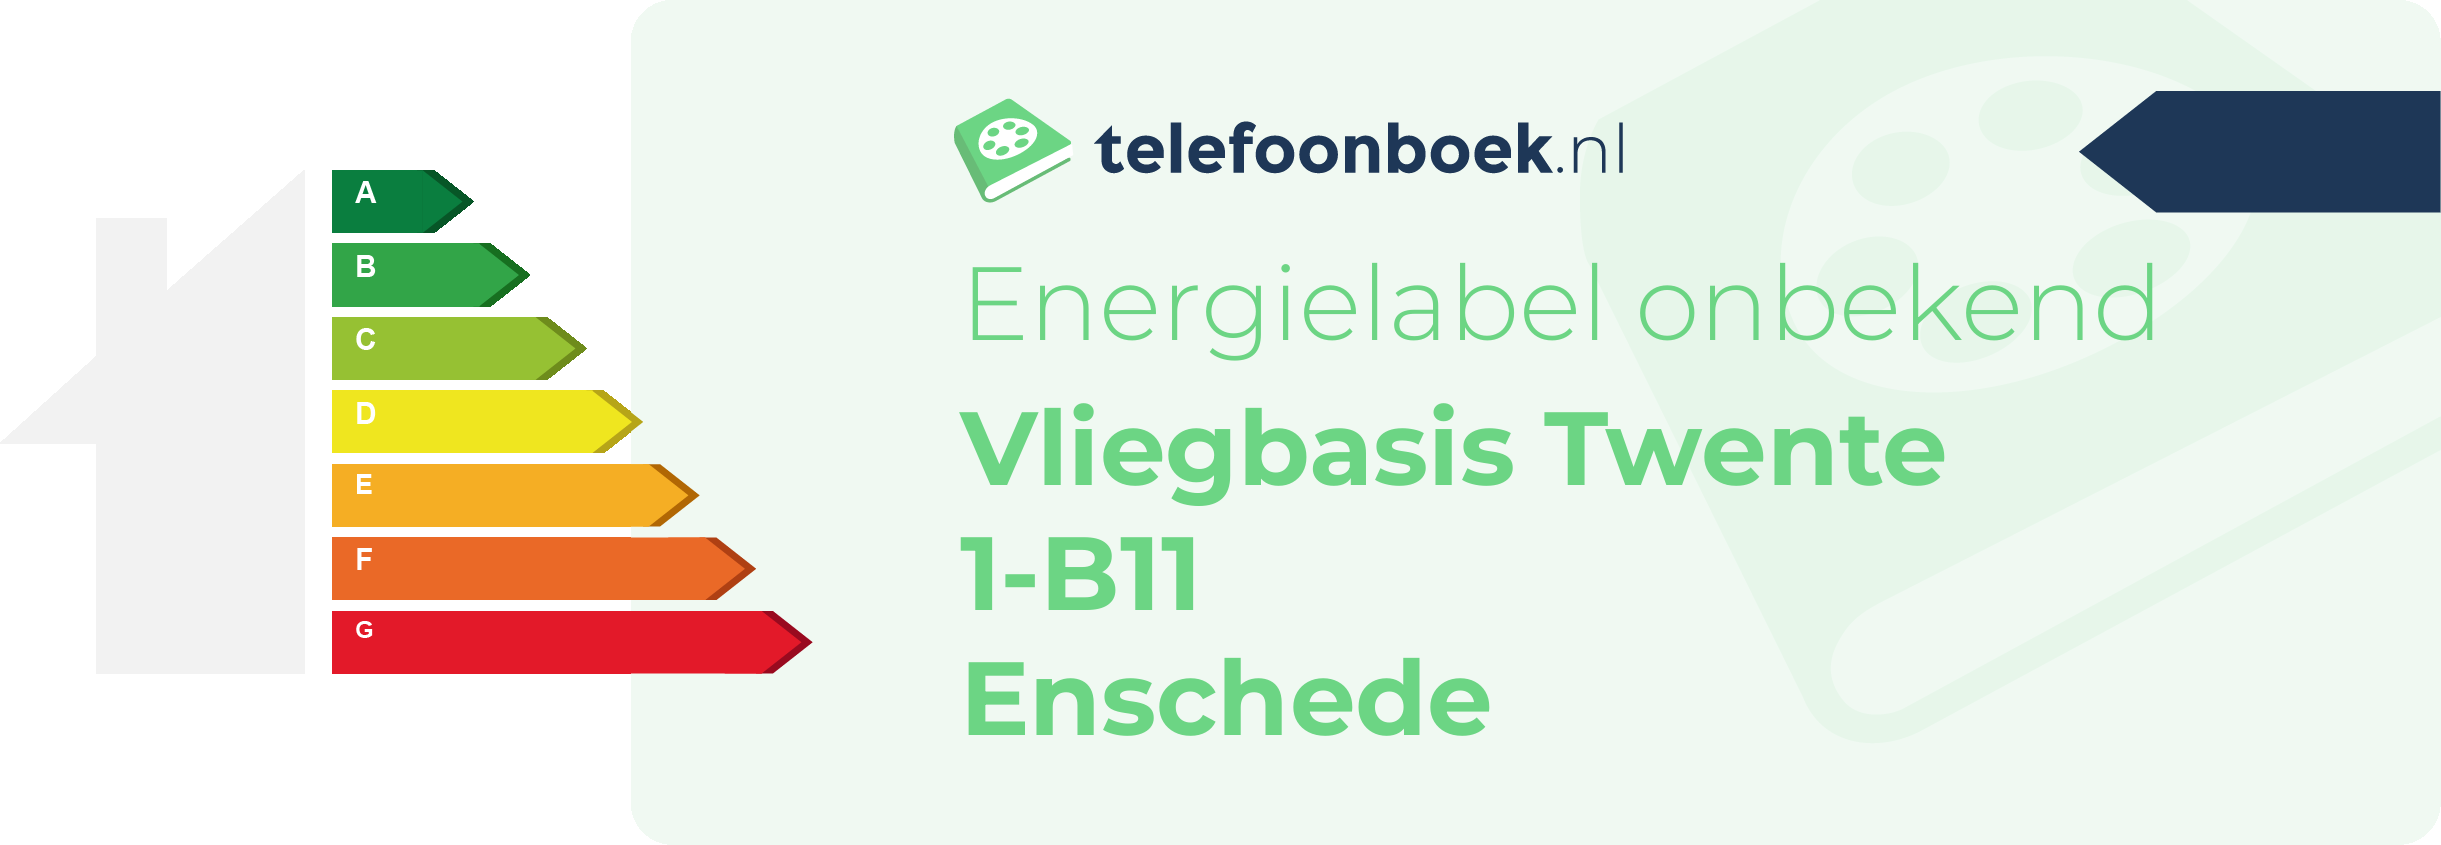 Energielabel Vliegbasis Twente 1-B11 Enschede